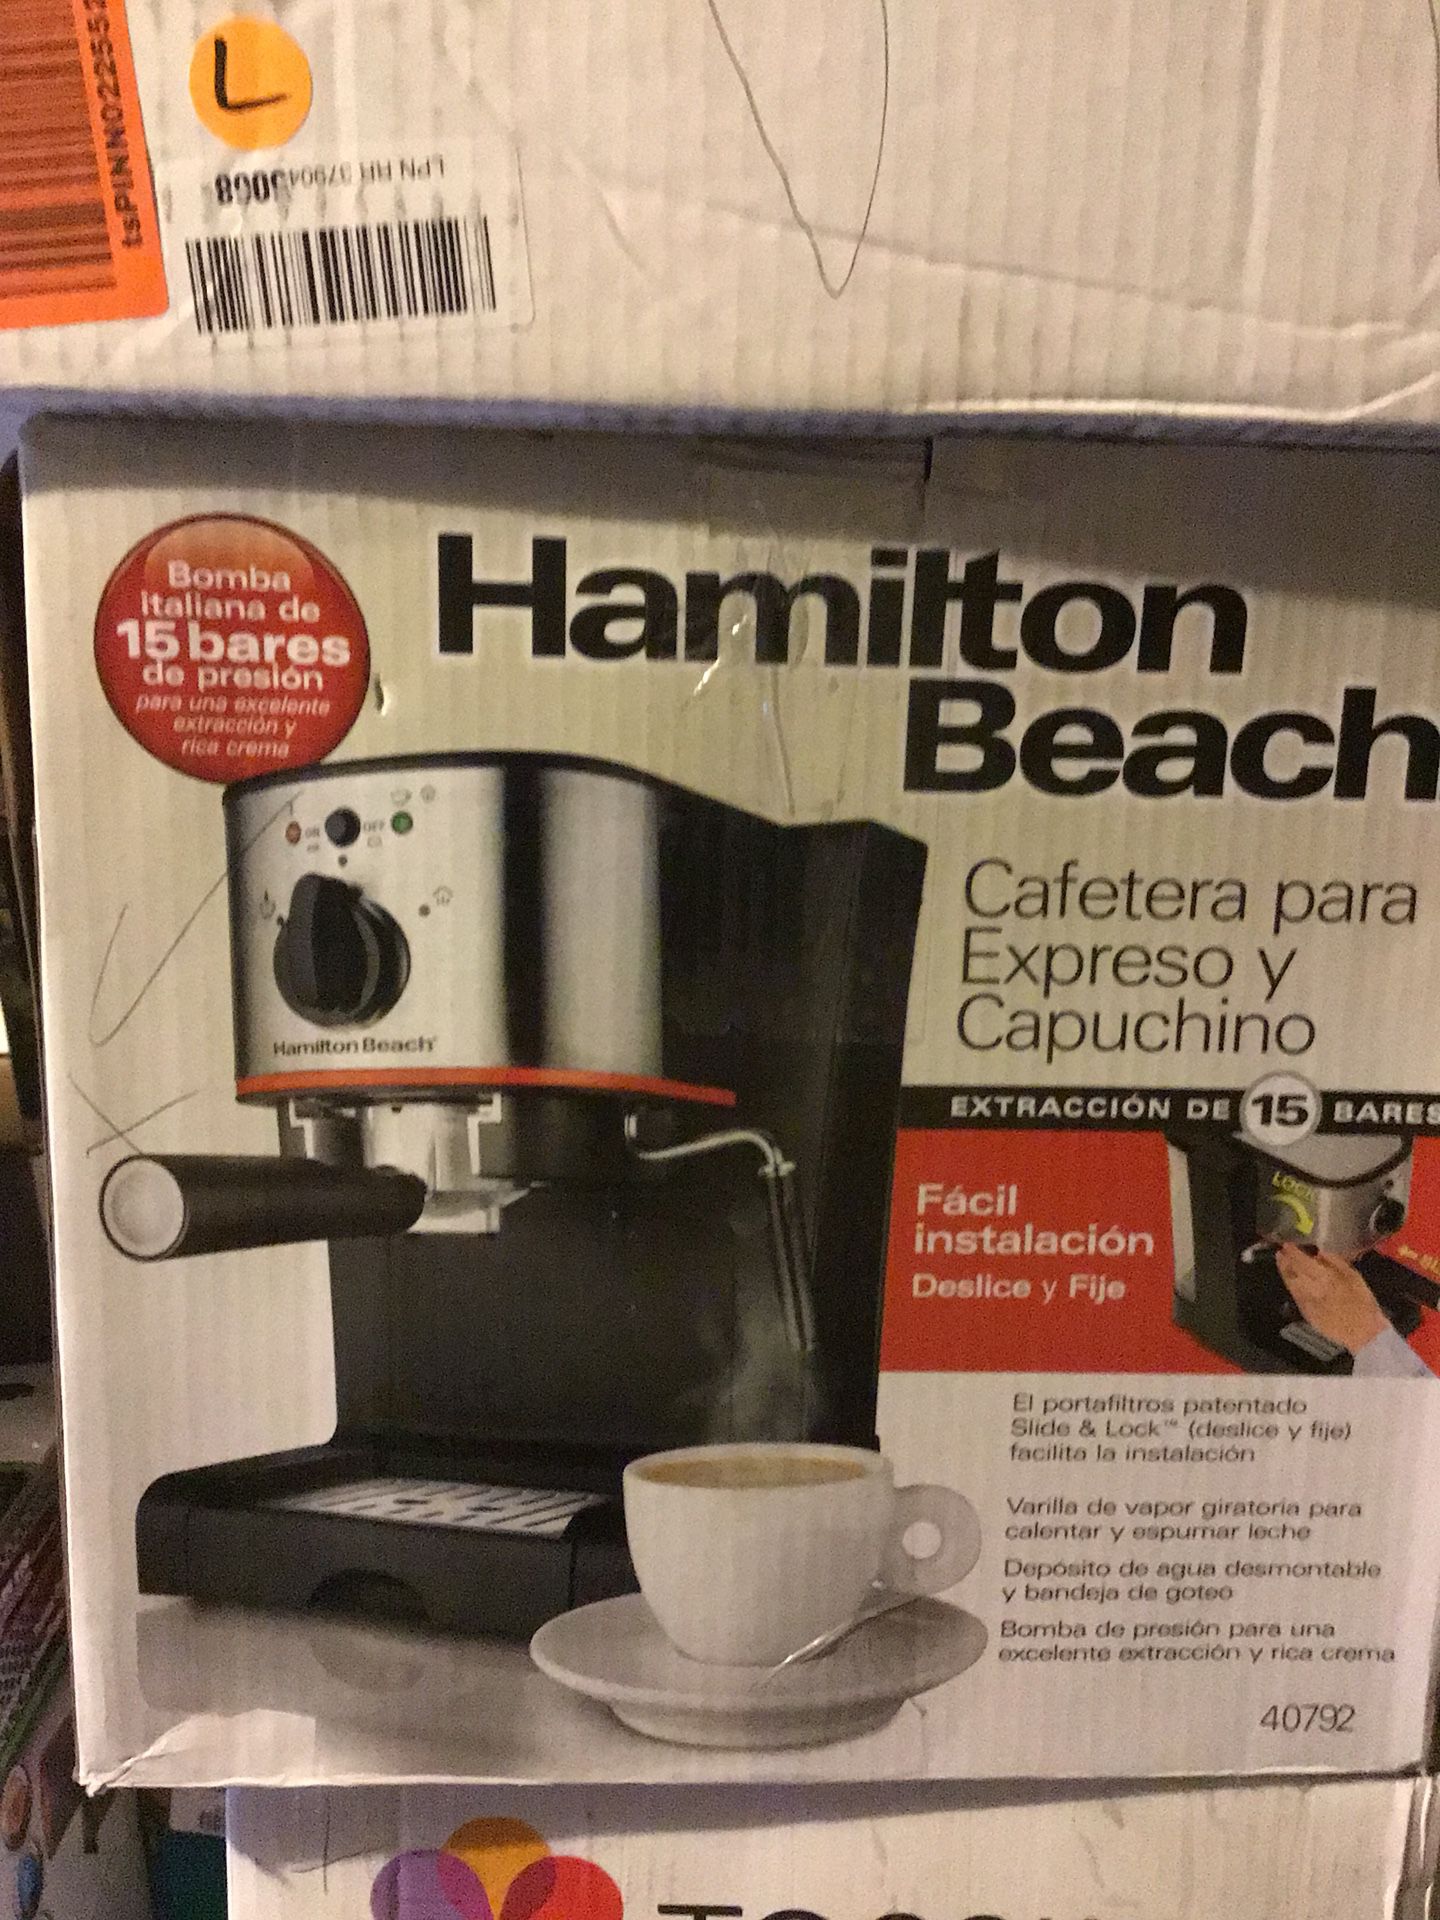 Hamilton Beach, cafetera para Espresso y Cappuccino, 40792, de